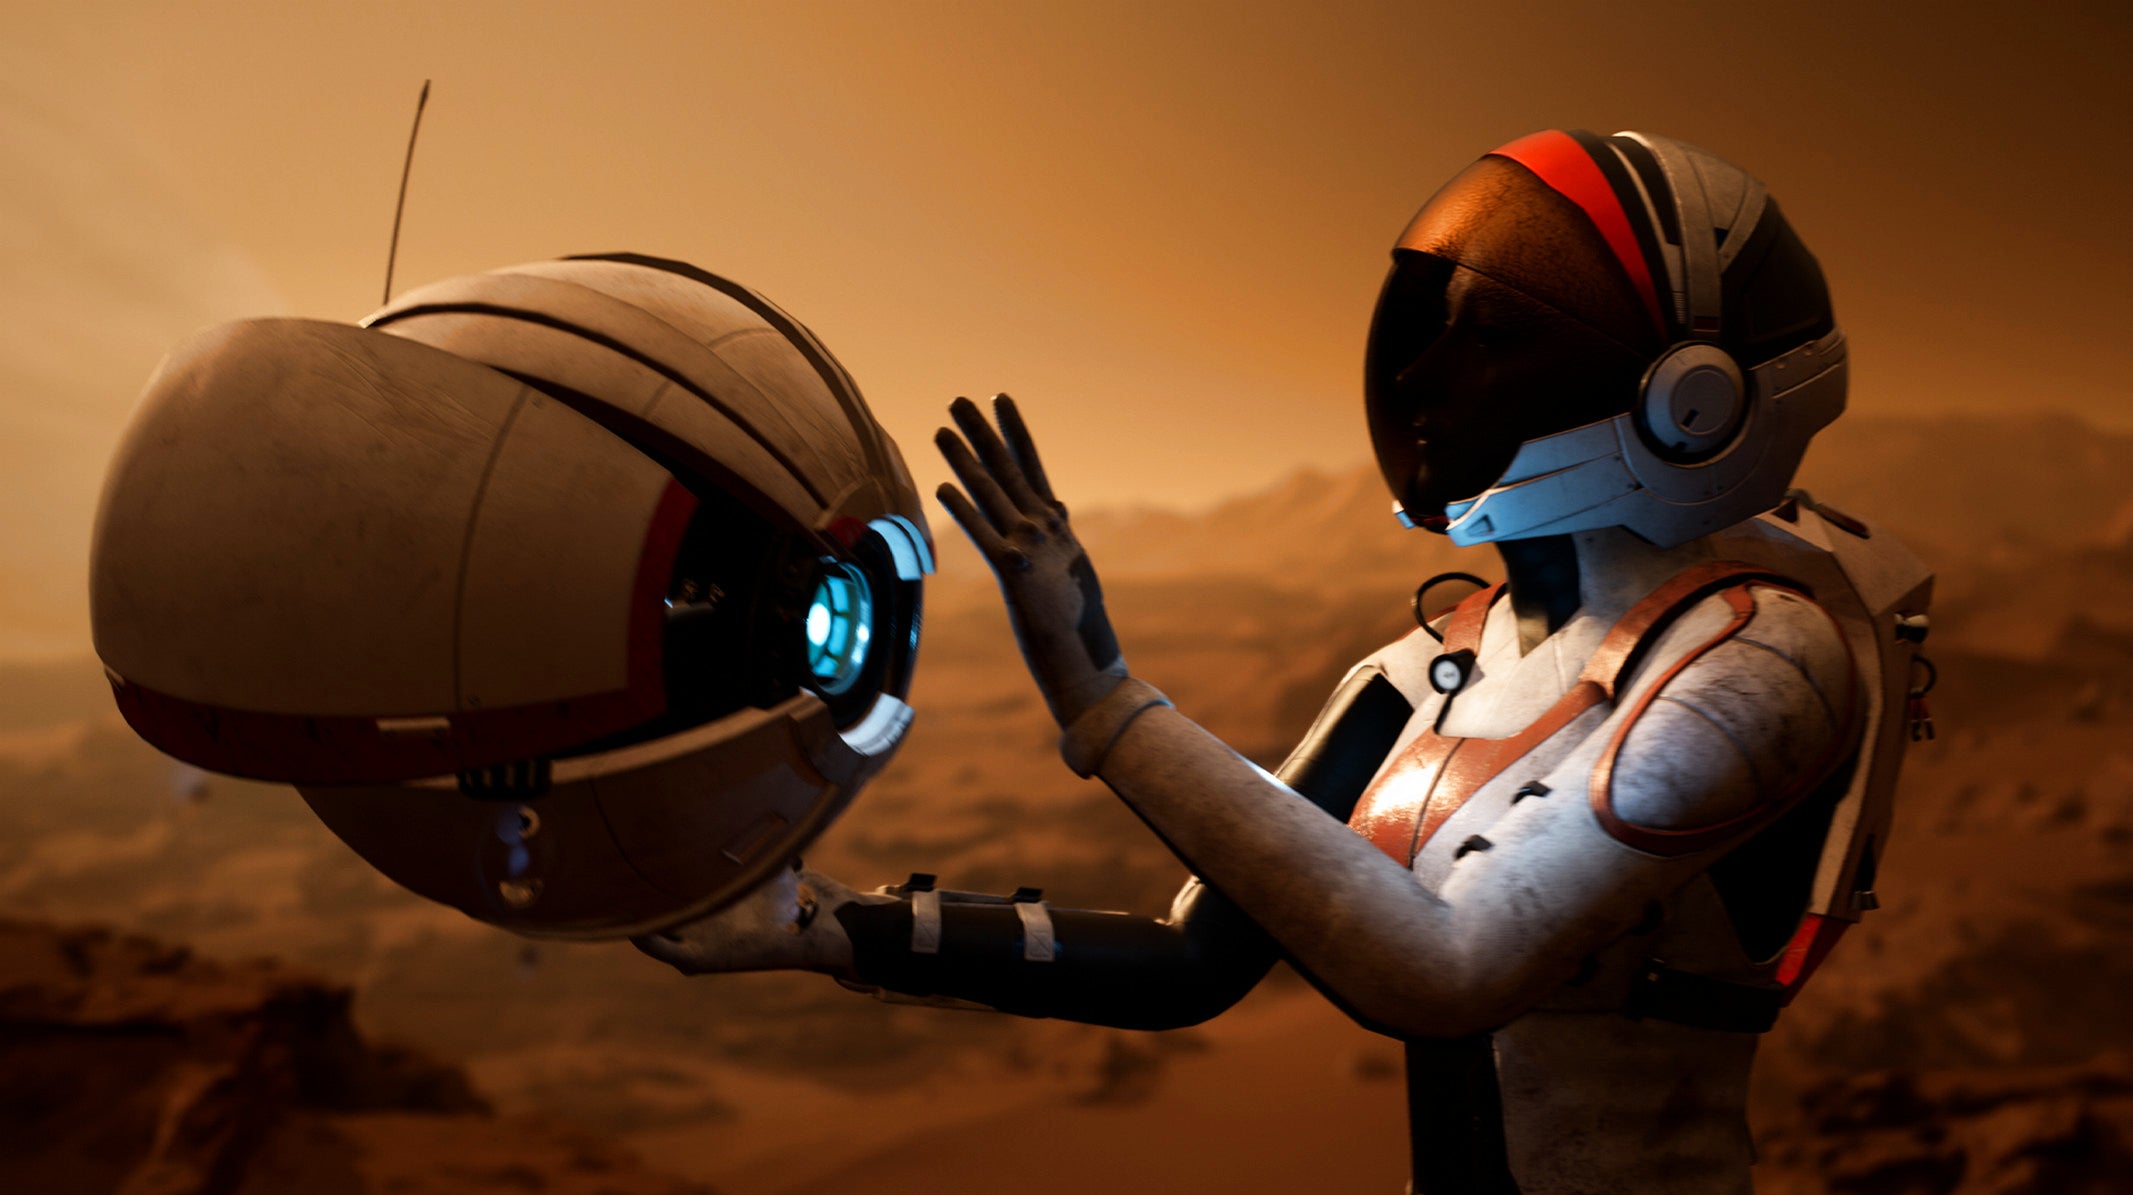 Bilder zu Deliver Us Mars hebt im September ab, neuer Gameplay-Trailer zeigt mehr vom Spiel